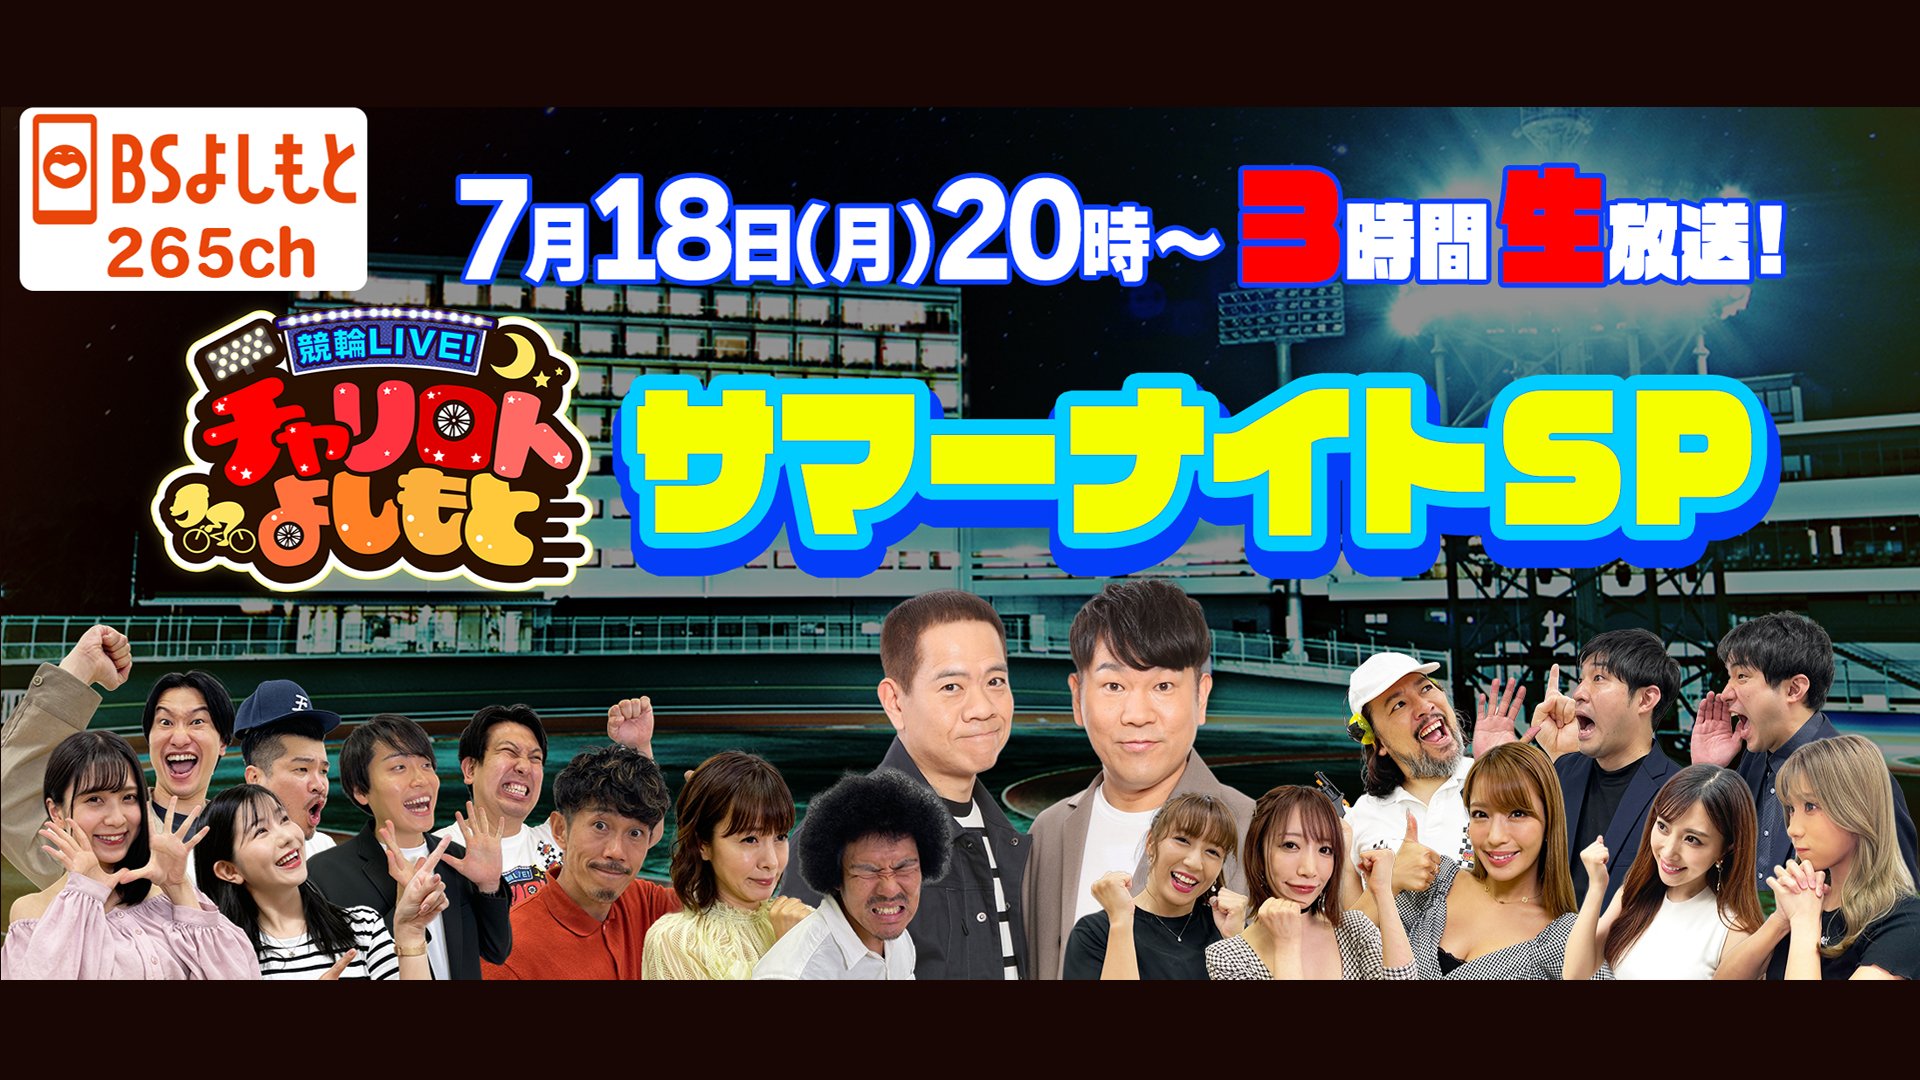 FANY マガジン：SPゲストはFUJIWARA! 『競輪LIVE! チャリロトよしもと サマーナイトSP』BSよしもとで7月18日3時間生放送!